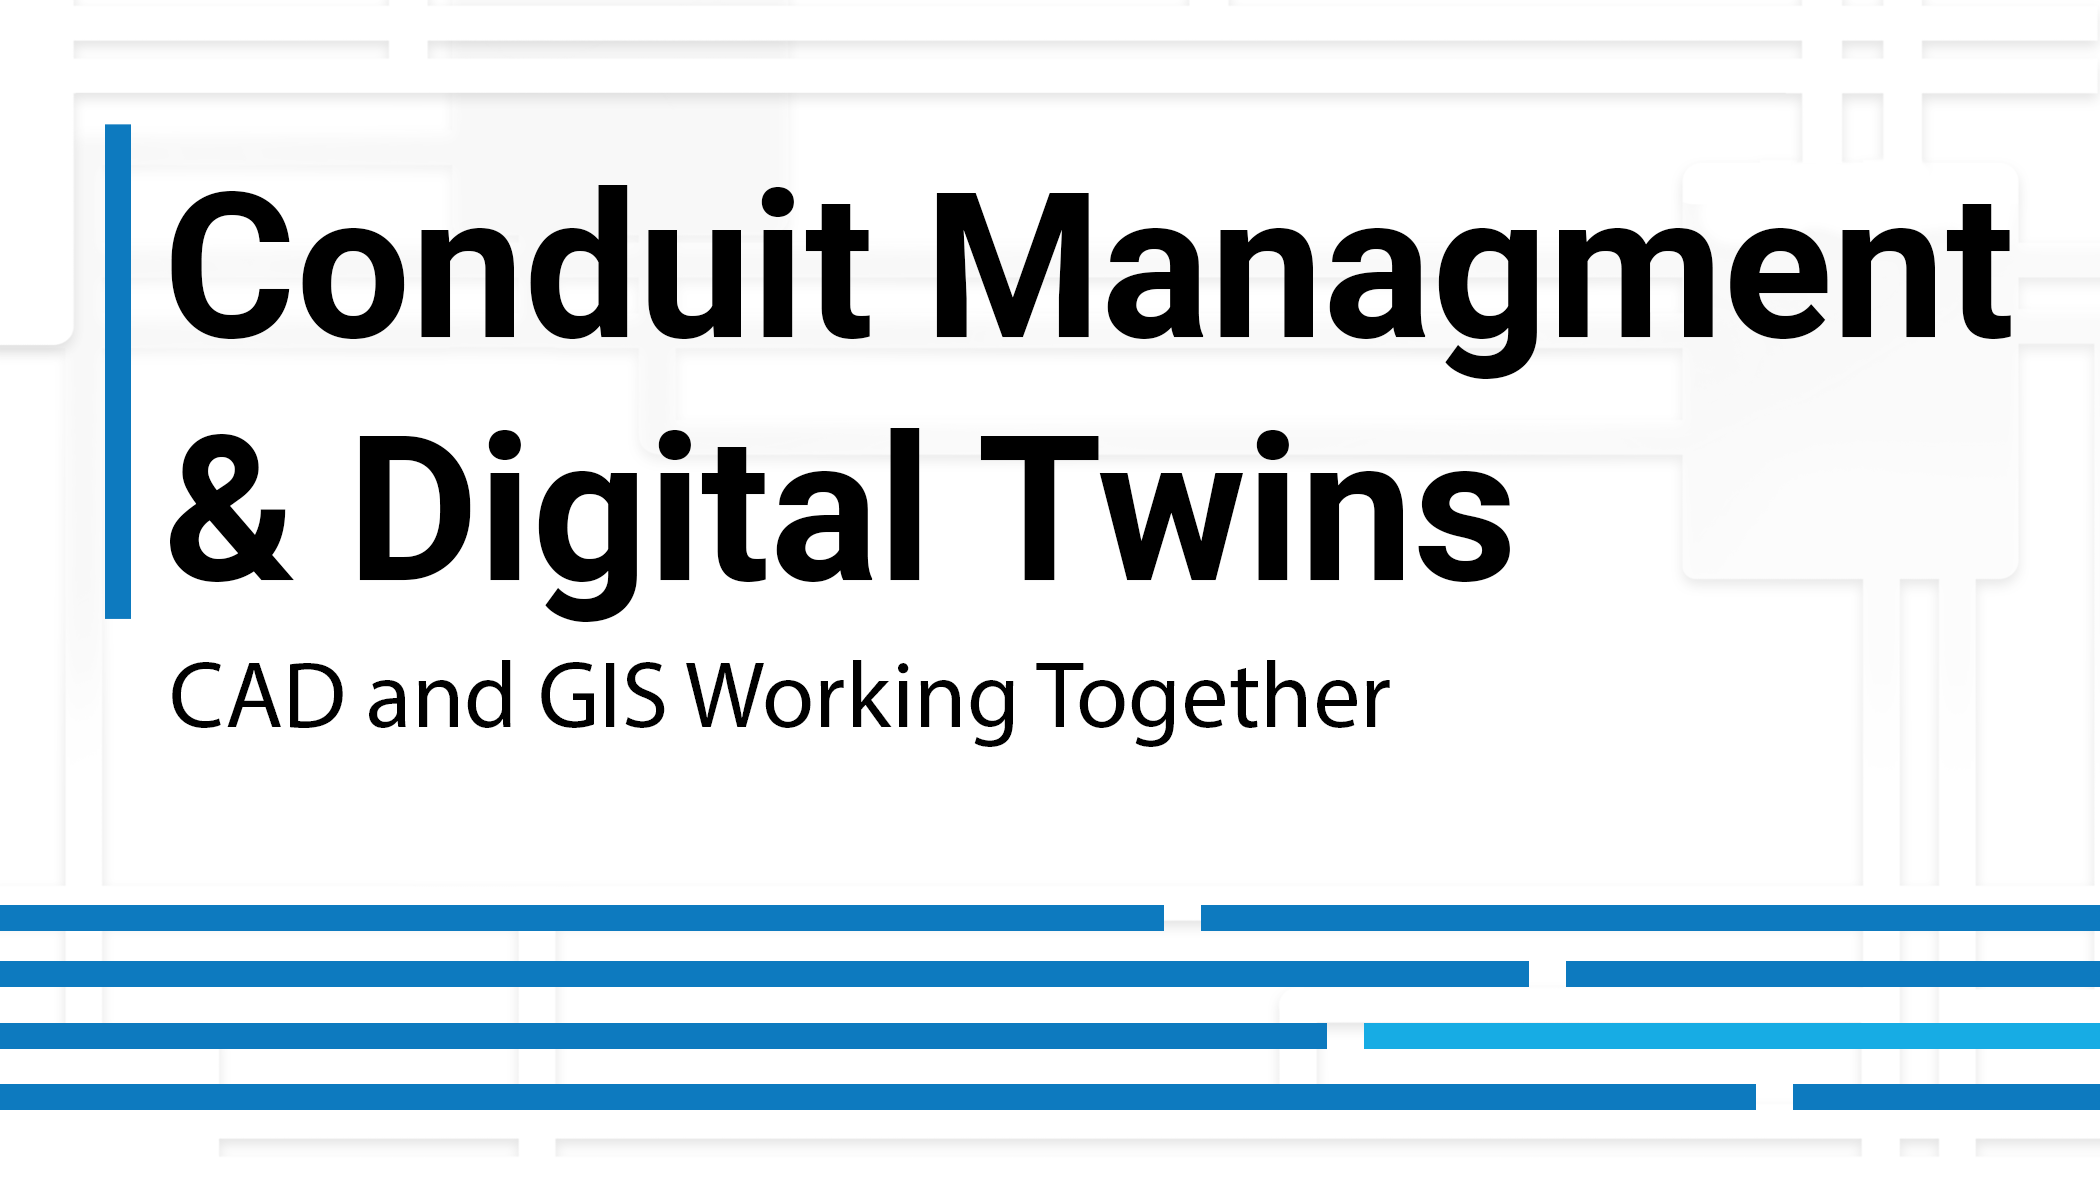 Conduit Management & Digital Twin